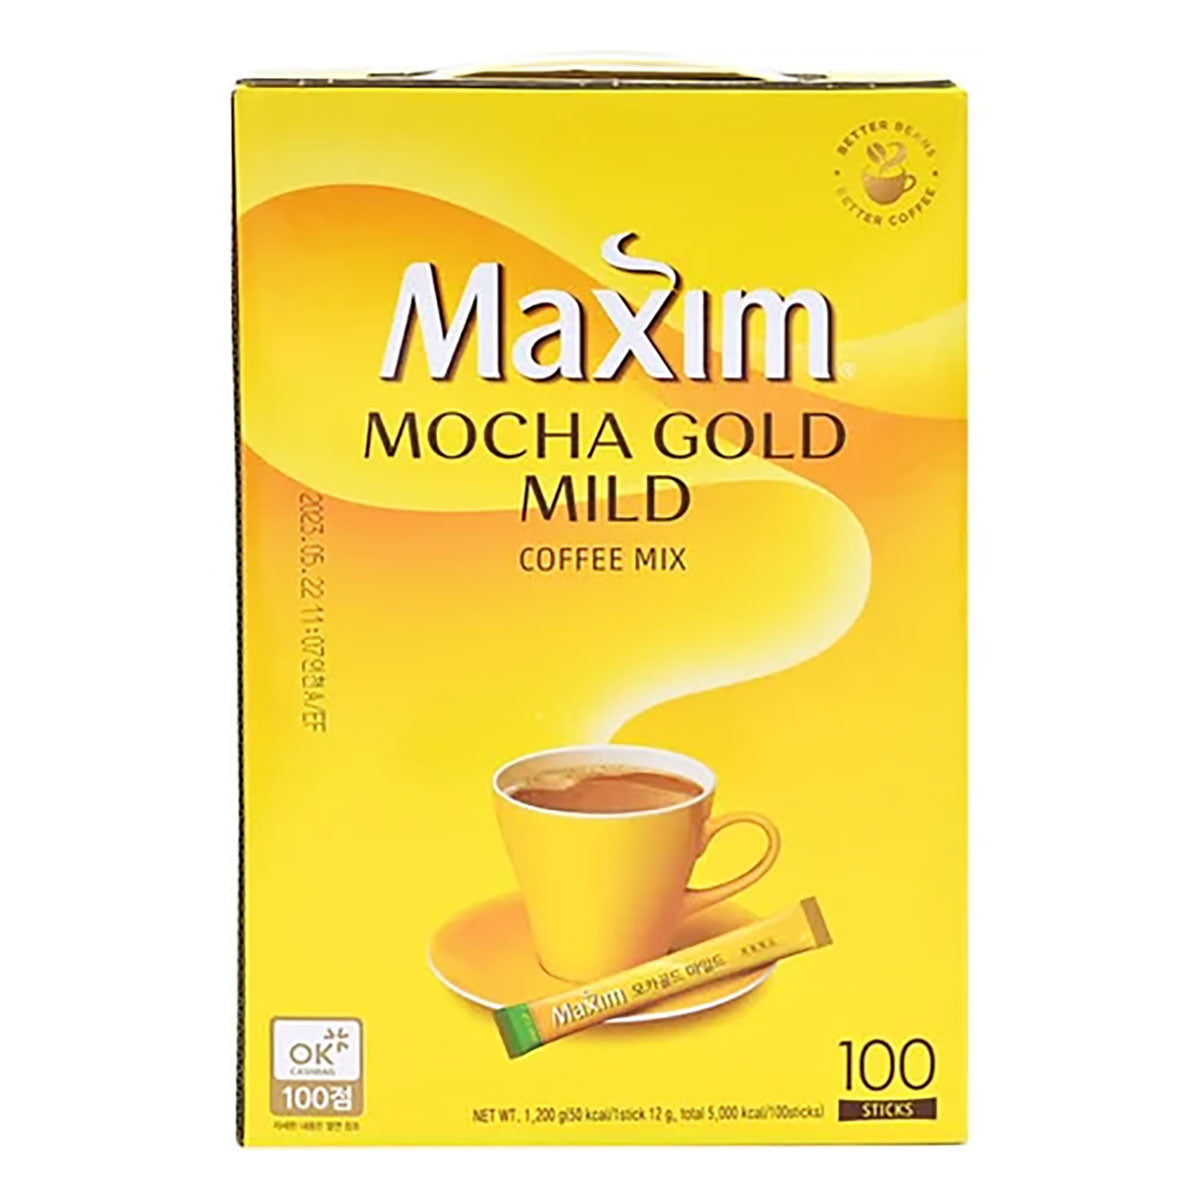 maxim white gold mild coffee mix 0.41oz - 100 sticks